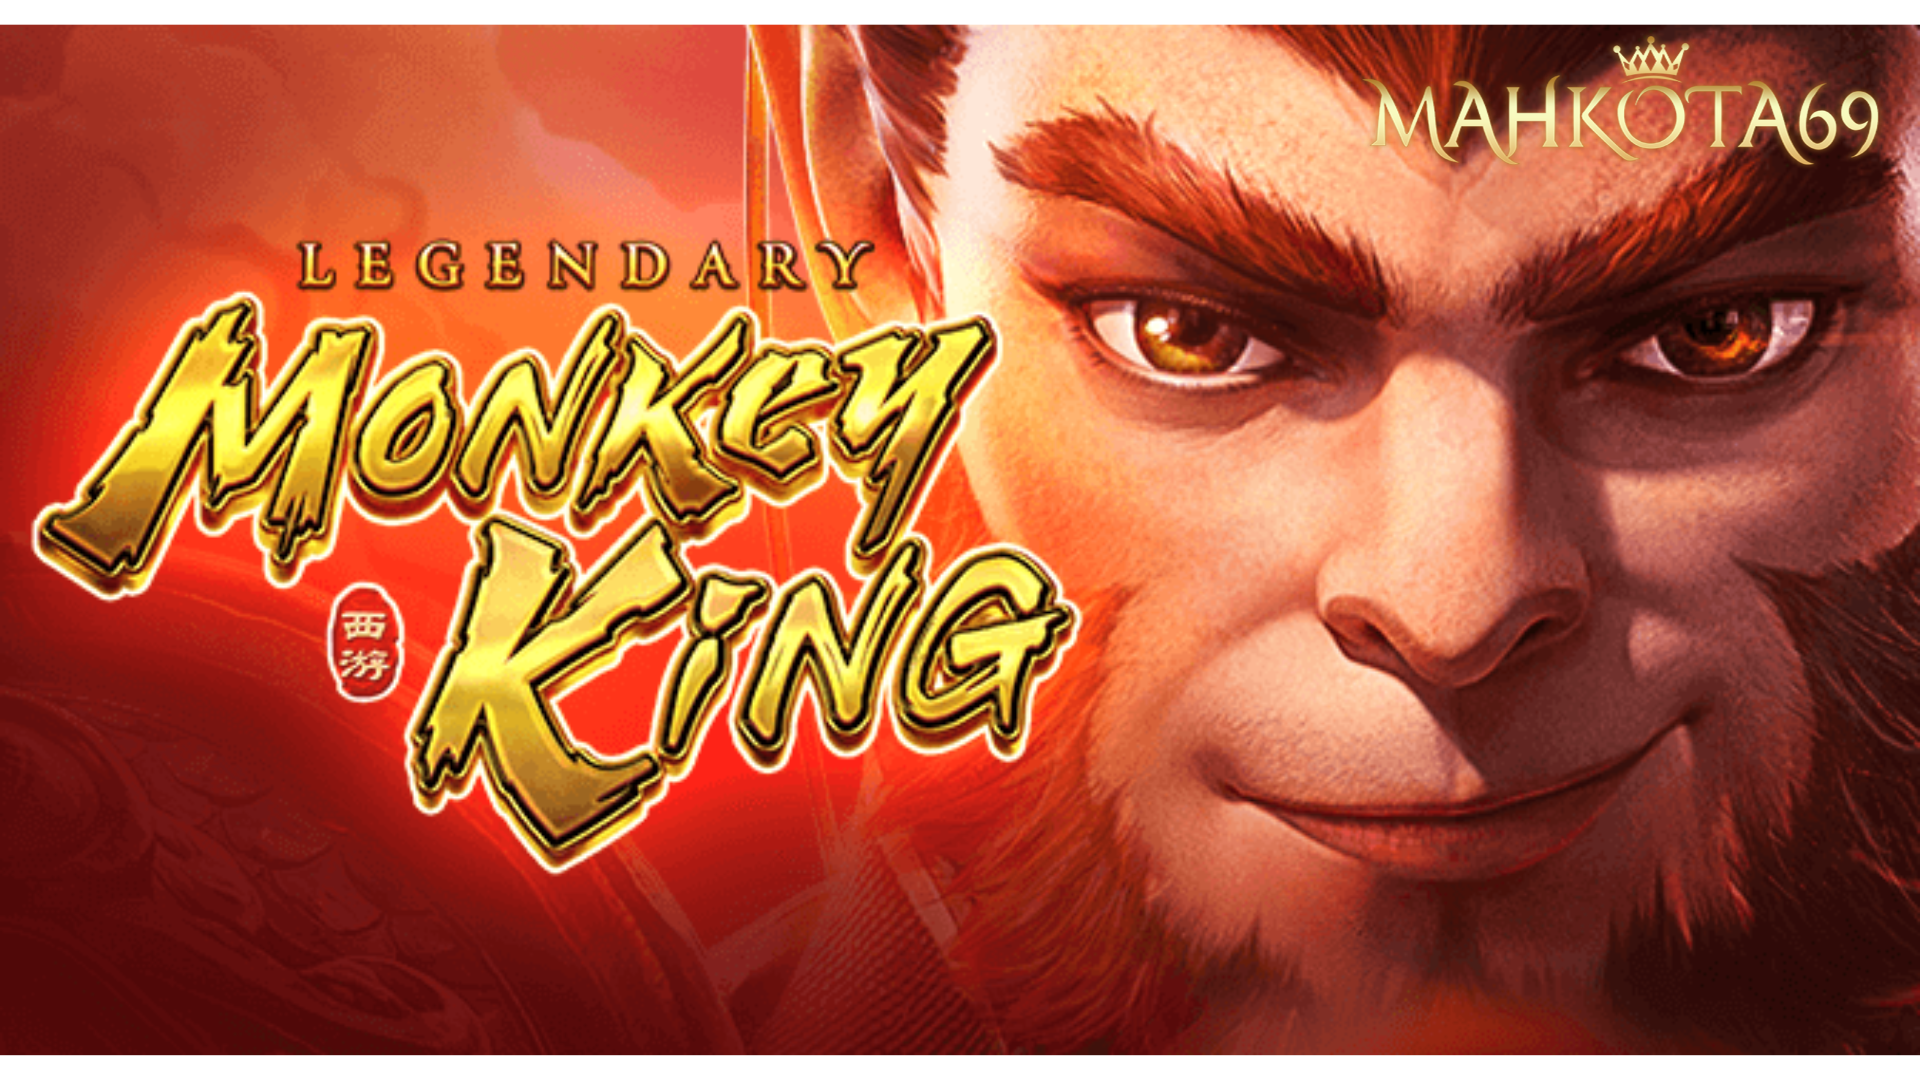 Legendary Monkey King Mahkota69